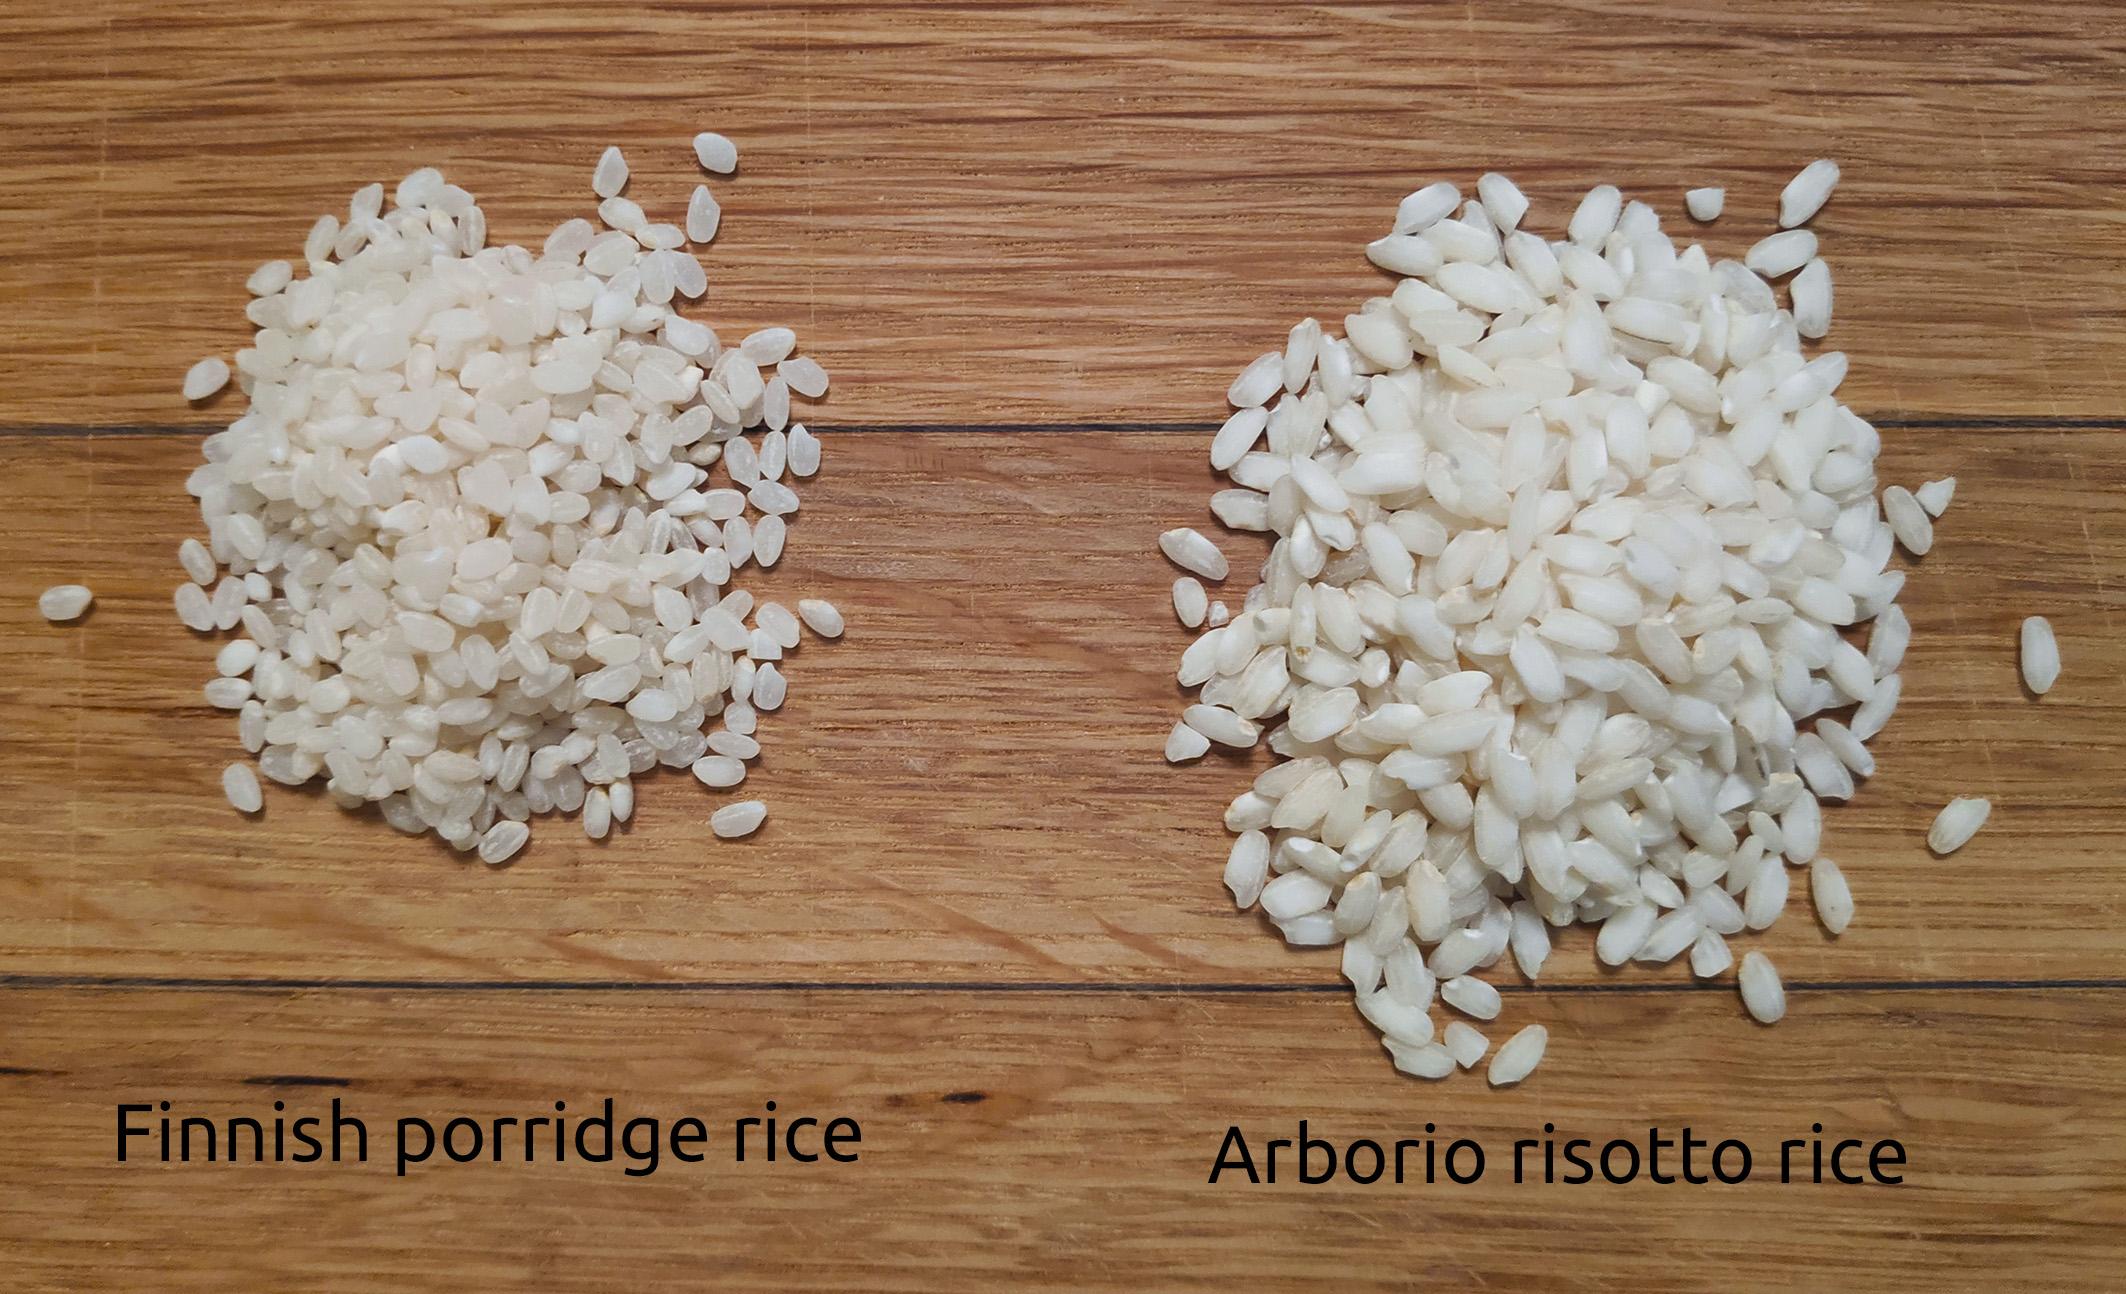 Finnish porridge rice vs. risotto rice